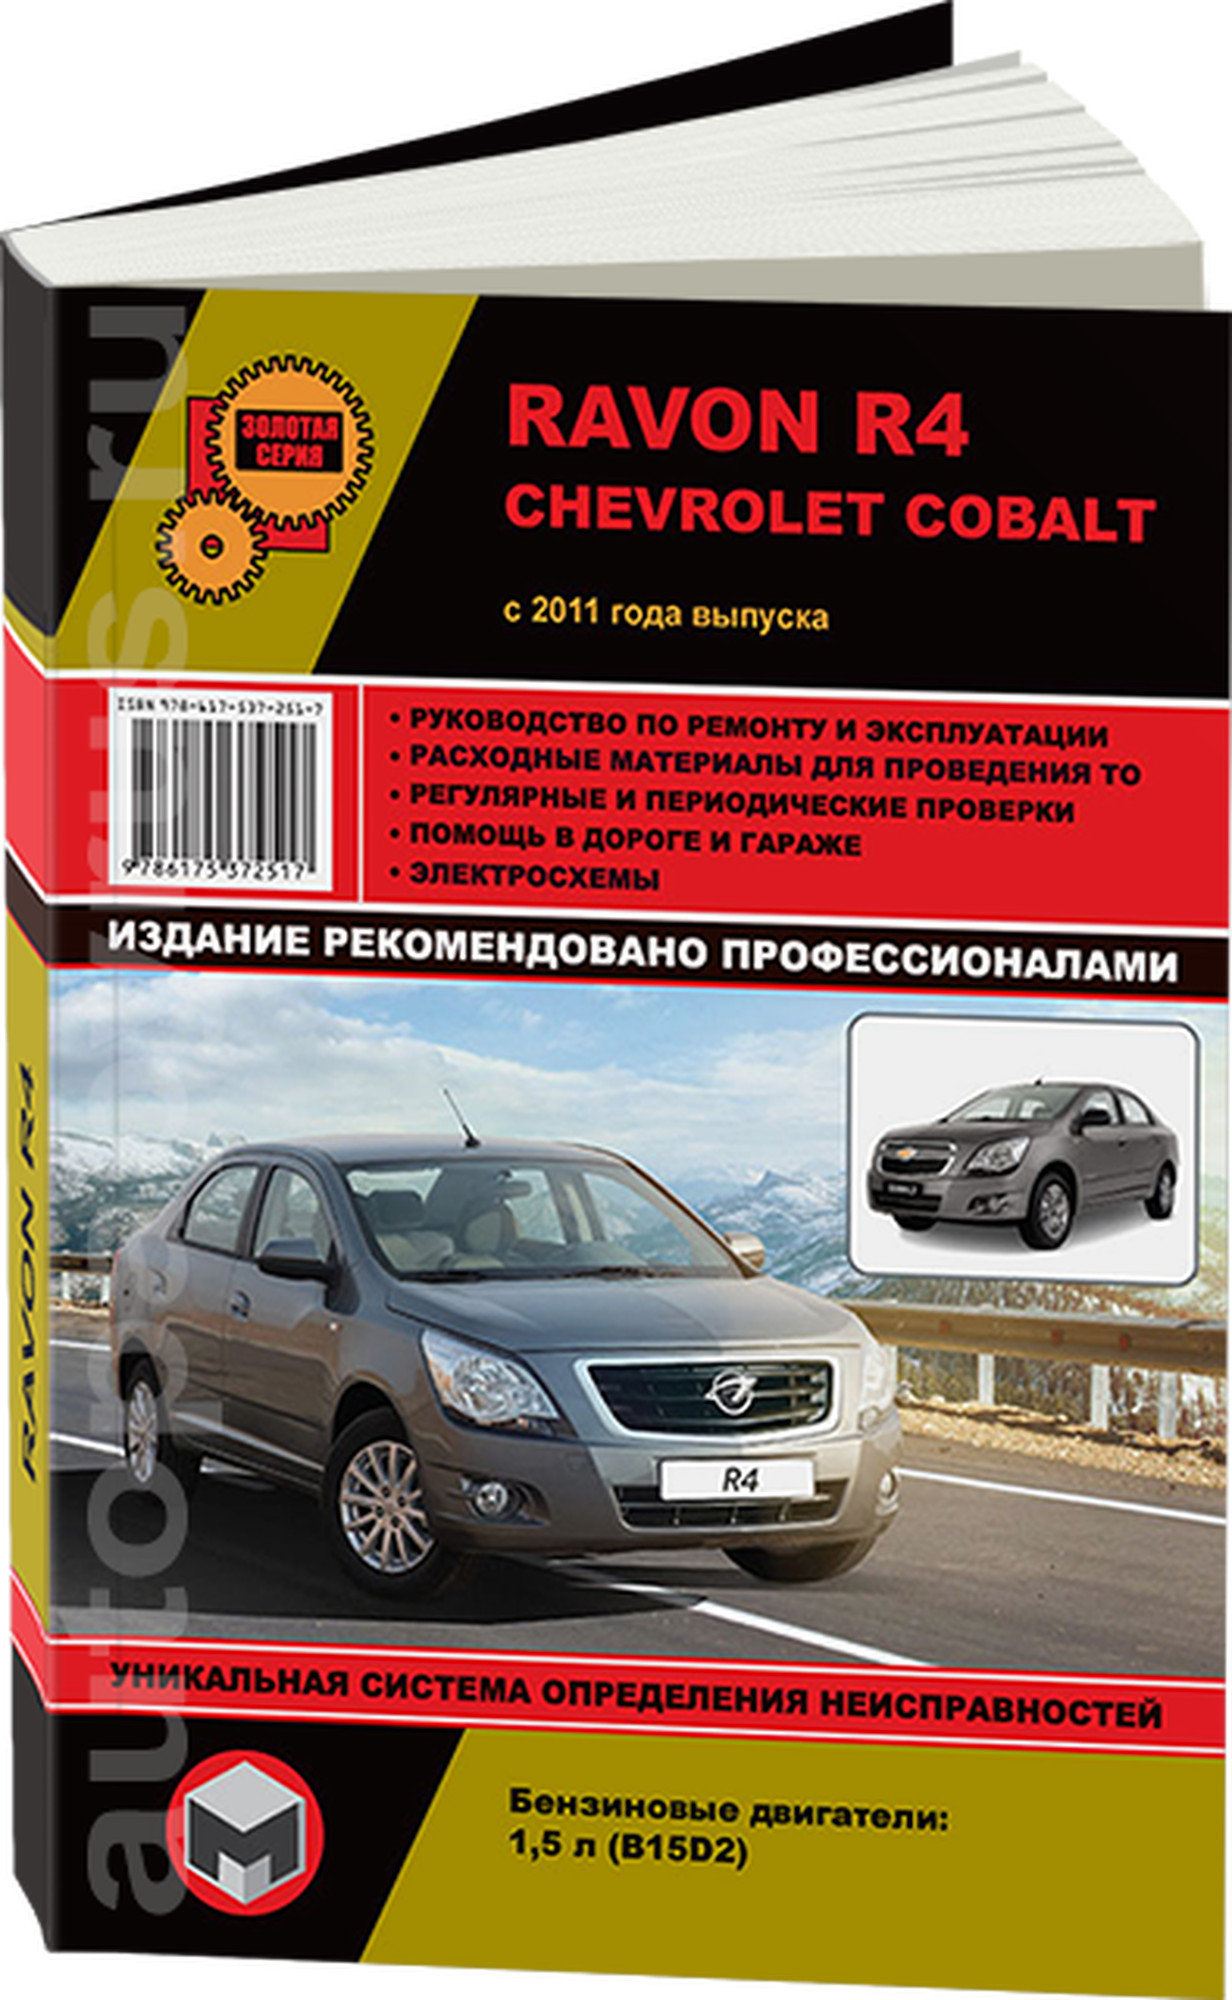 Автокнига: руководство / инструкция по ремонту и эксплуатации RAVON R4 / CHEVROLET COBALT (равон Р4 / шевроле кобальт) с 2011 года выпуска бензин, 978-617-537-251-7, издательство Монолит